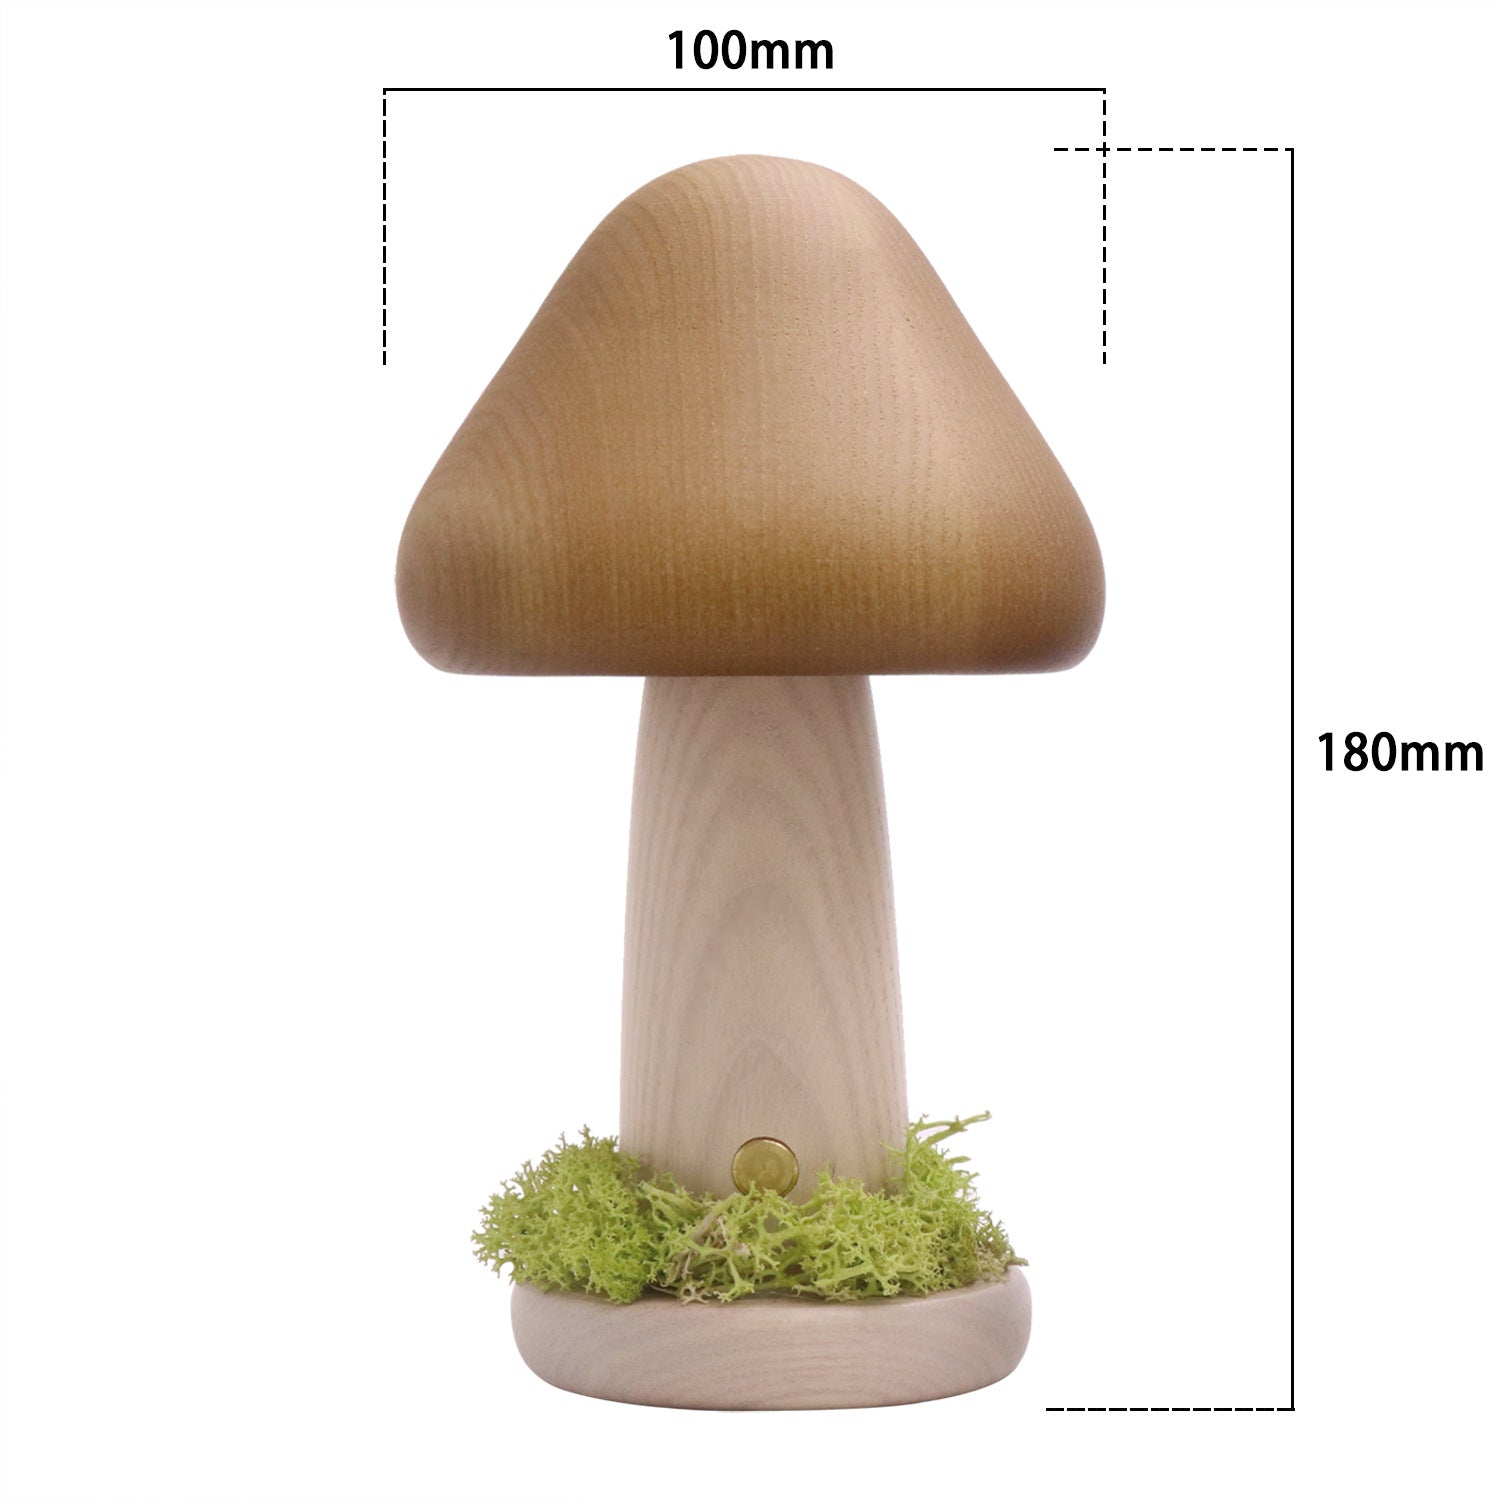 Twist Head Mushroom Small Night Lamp